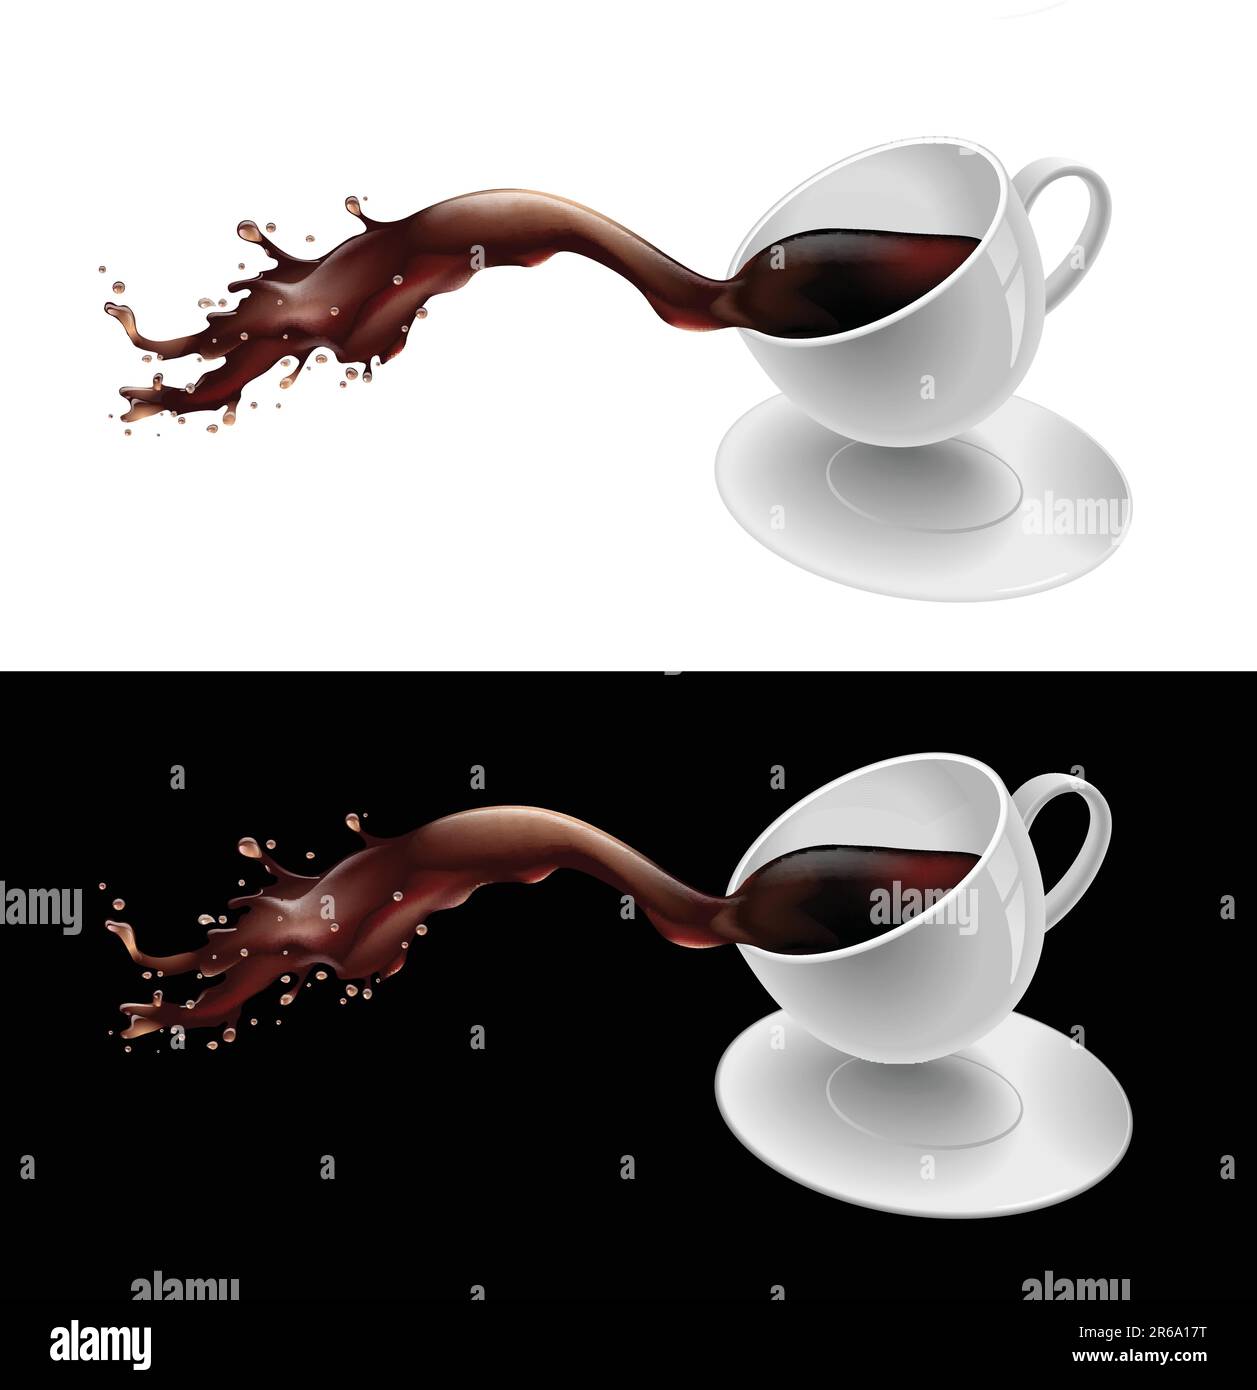 Immagine vettoriale di un caffè che fuoriesce da una tazza Illustrazione Vettoriale